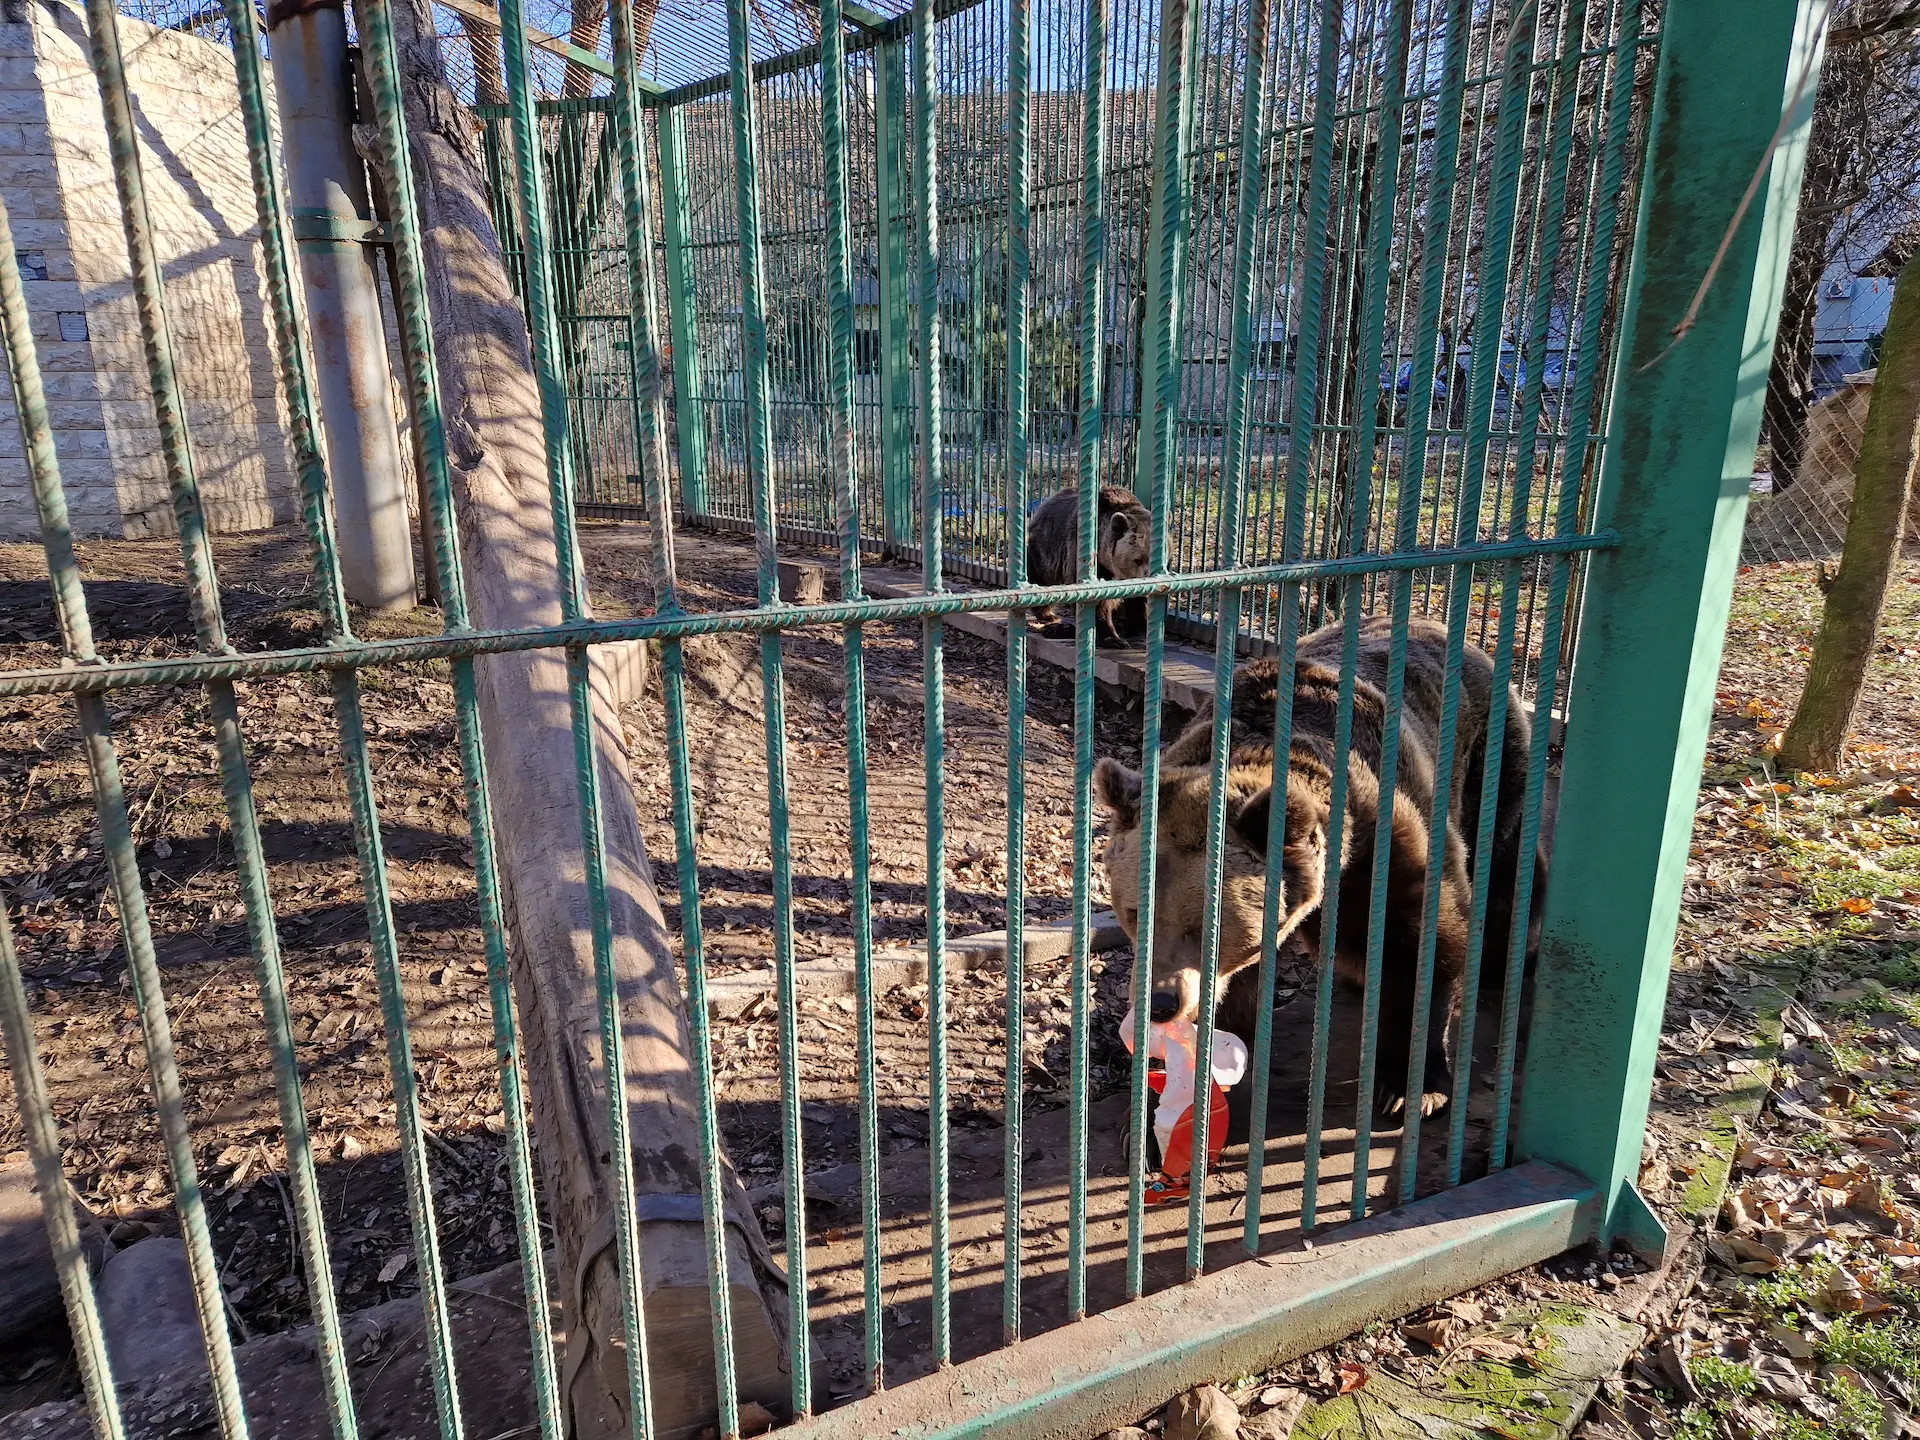 Un ours derrière les barreaux de sa cage qui porte un déchet dans sa gueule, emballage plastique quelconque. Un deuxième ours le suit quelques mètres derrière